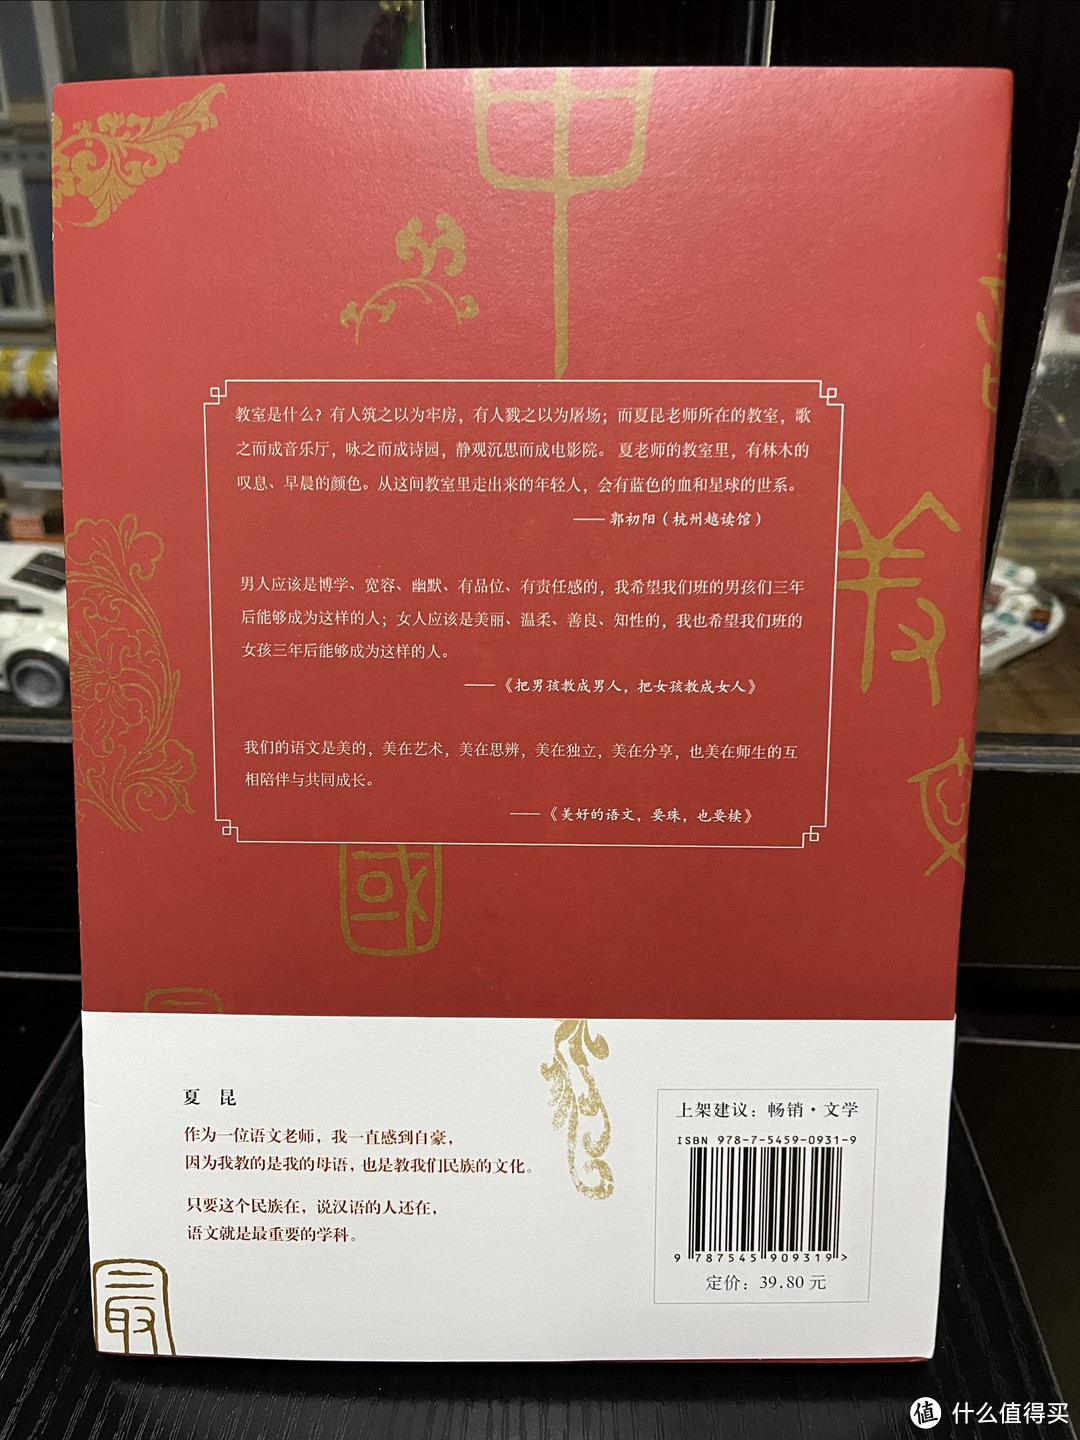 语文菜鸟最爱读的书 1：中国最美的语文